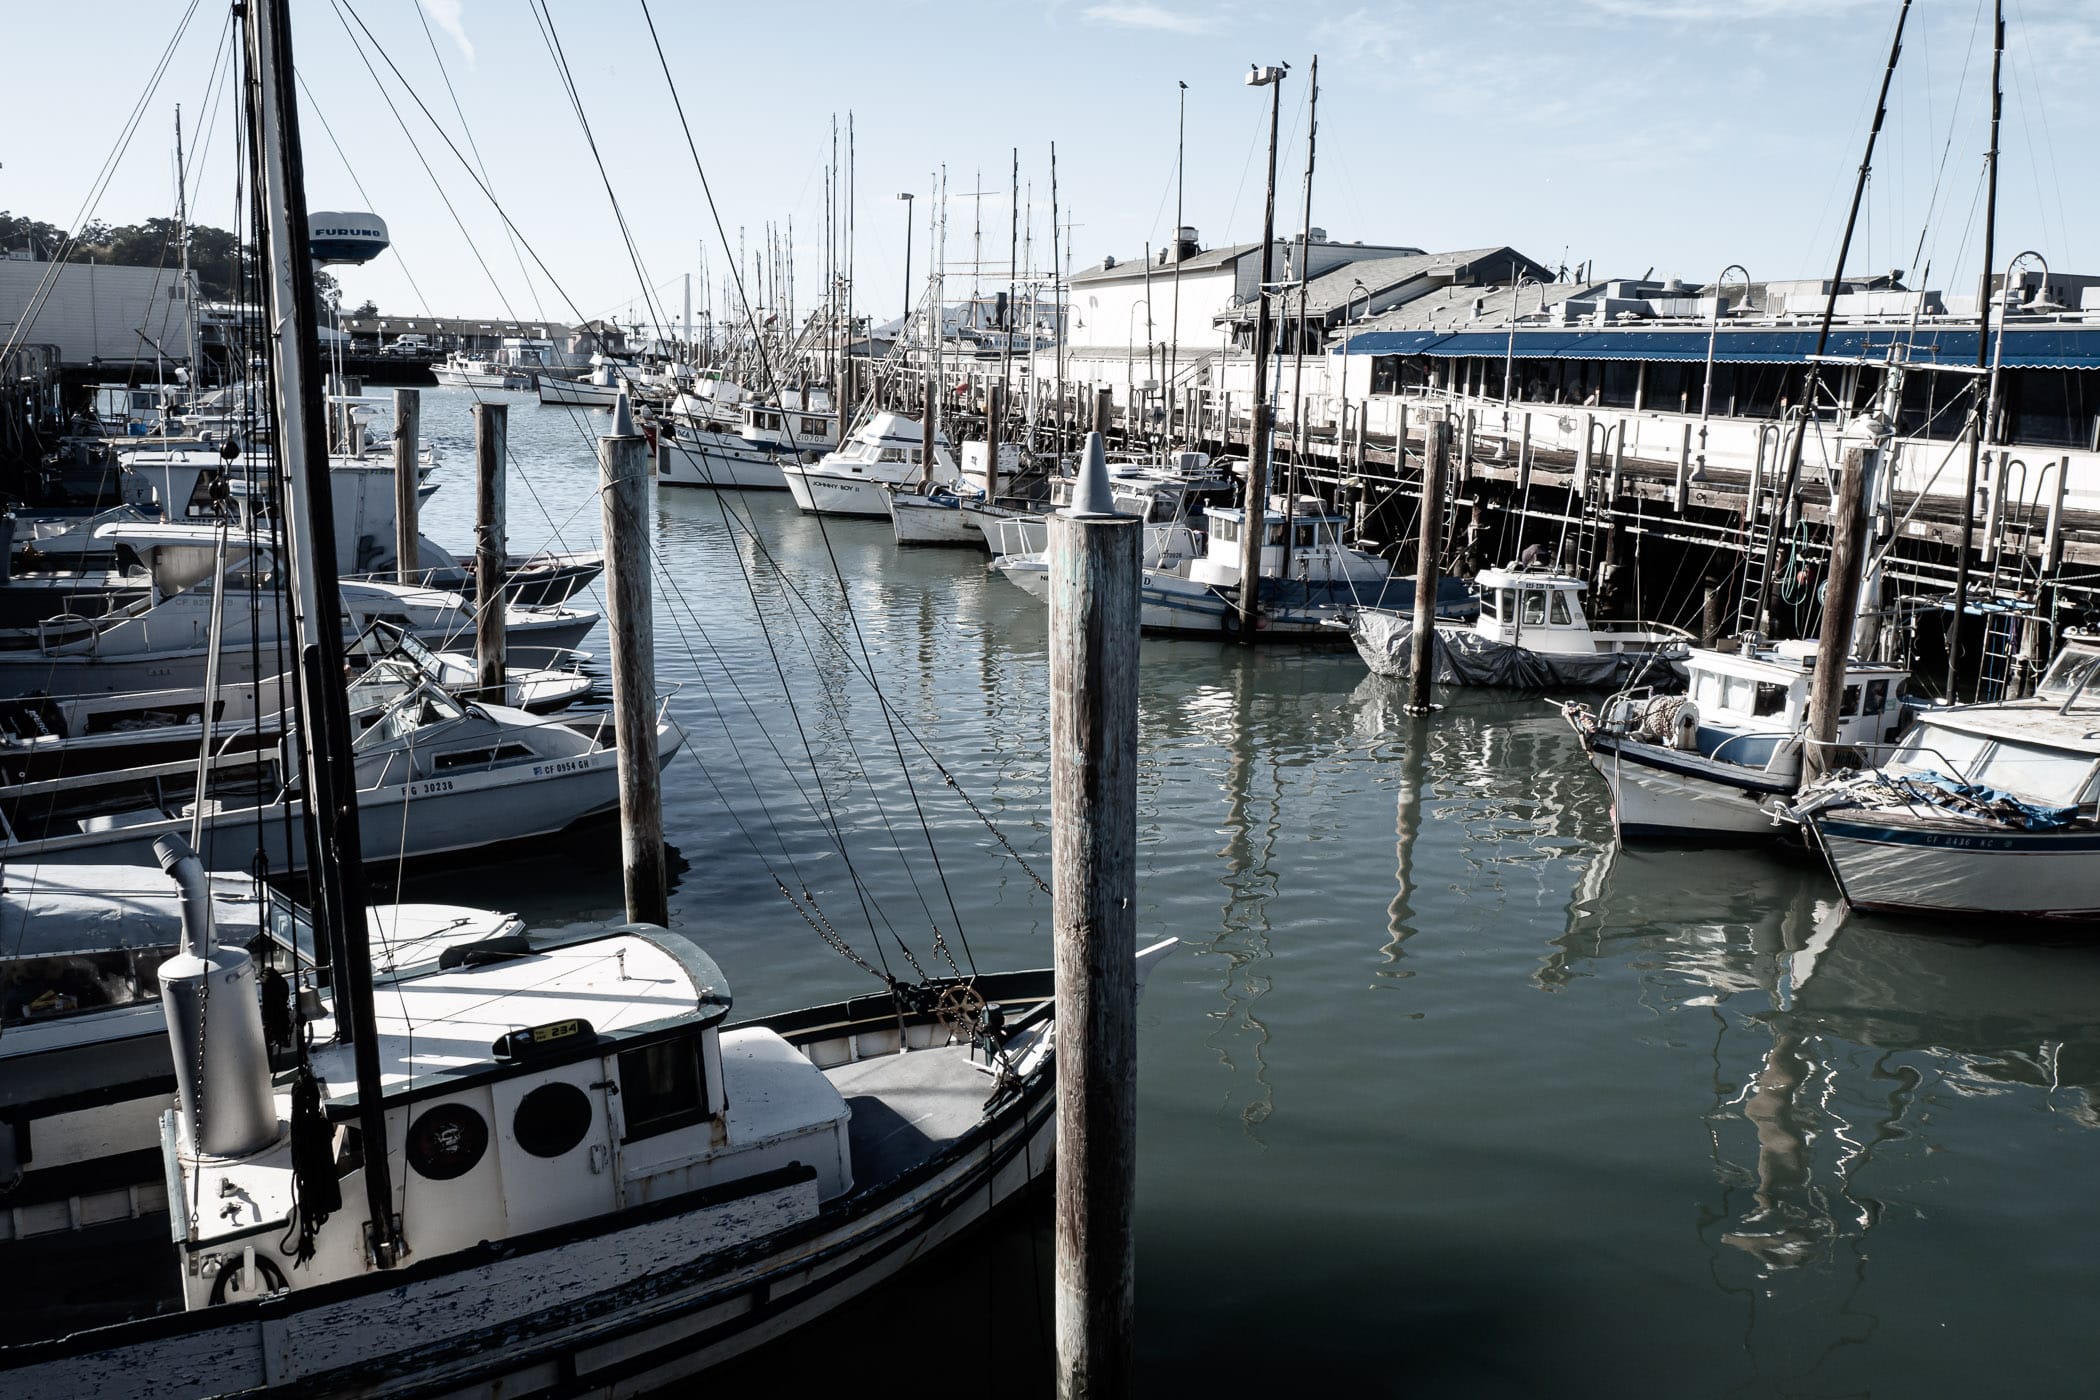 Boats docked at a pier along San Francisco’s Fisherman’s Wharf.